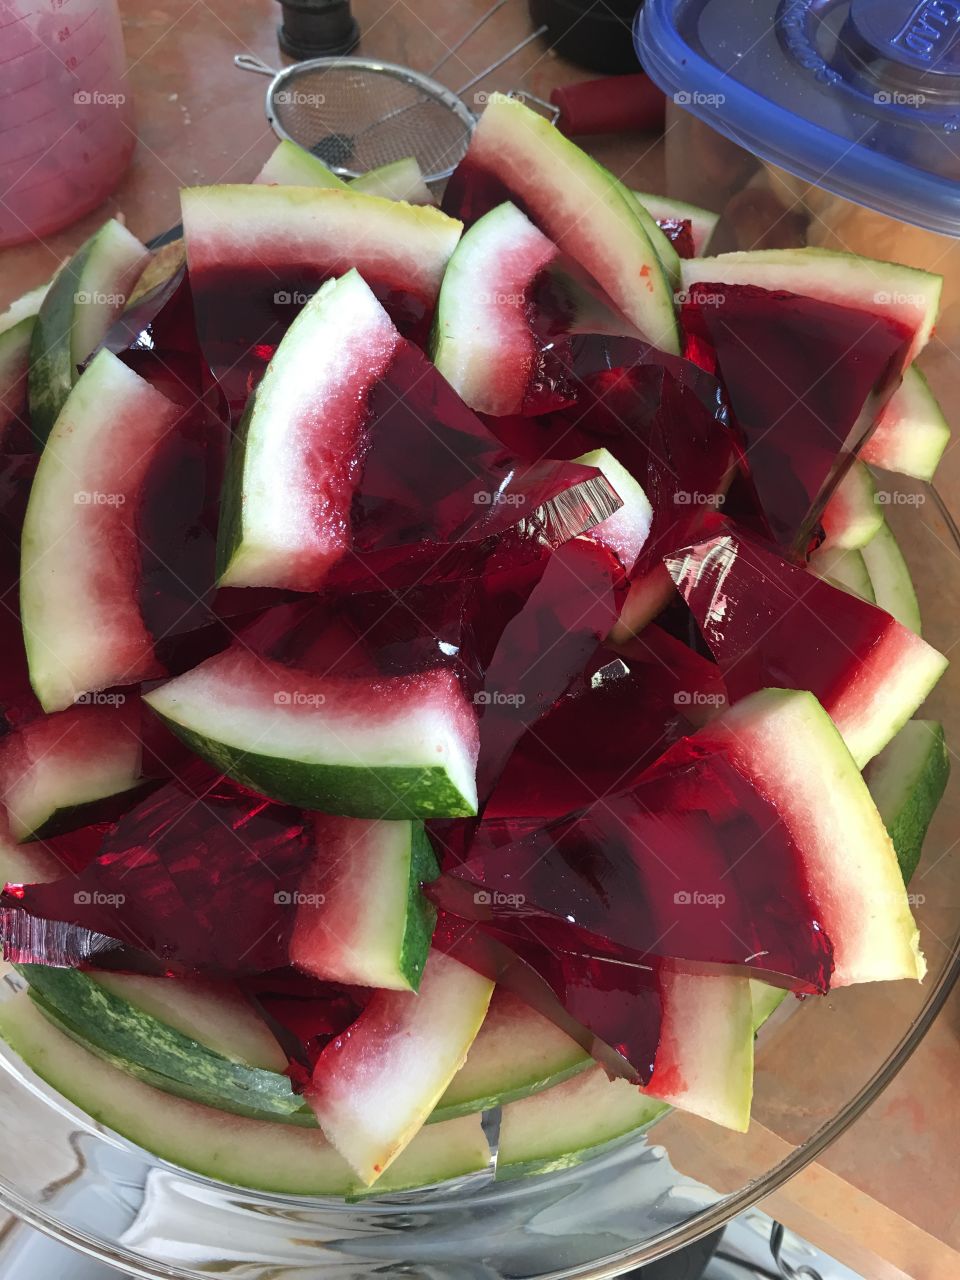 Jello watermelon 